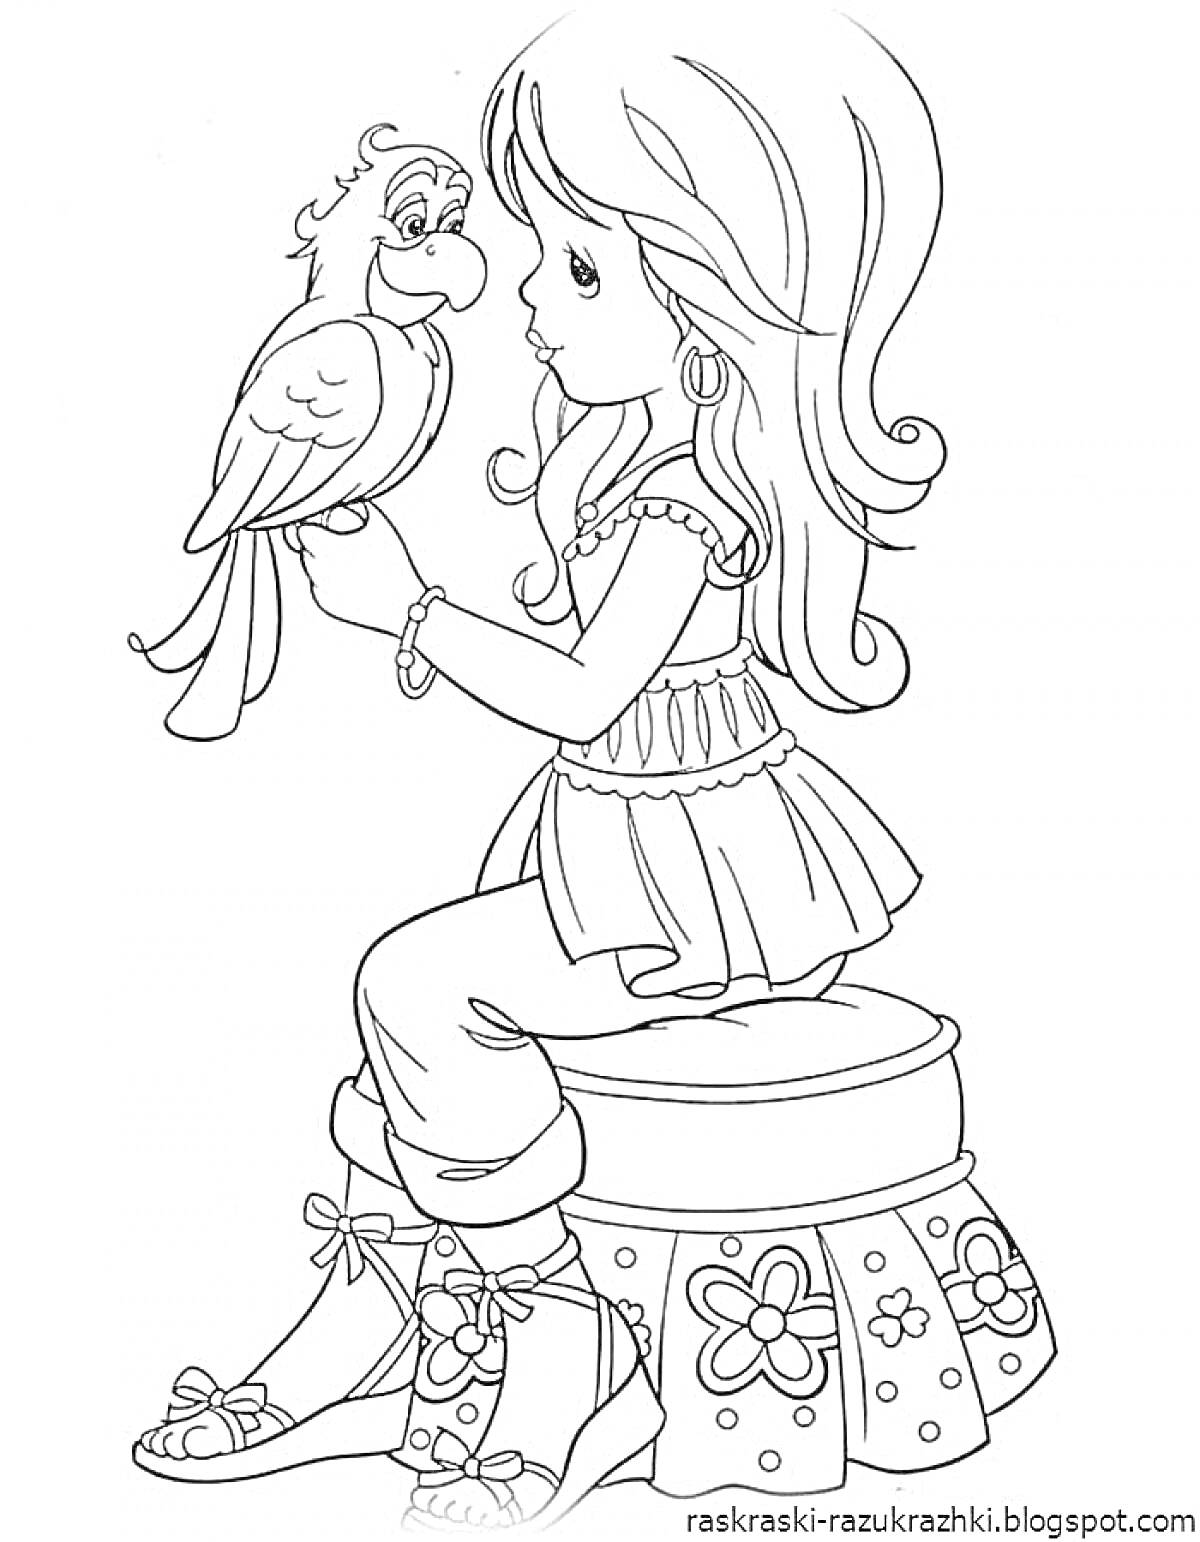 Раскраска Девочка с длинными волосами в платье и сандалиях, сидящая на табуретке с цветами и разговаривающая с попугаем